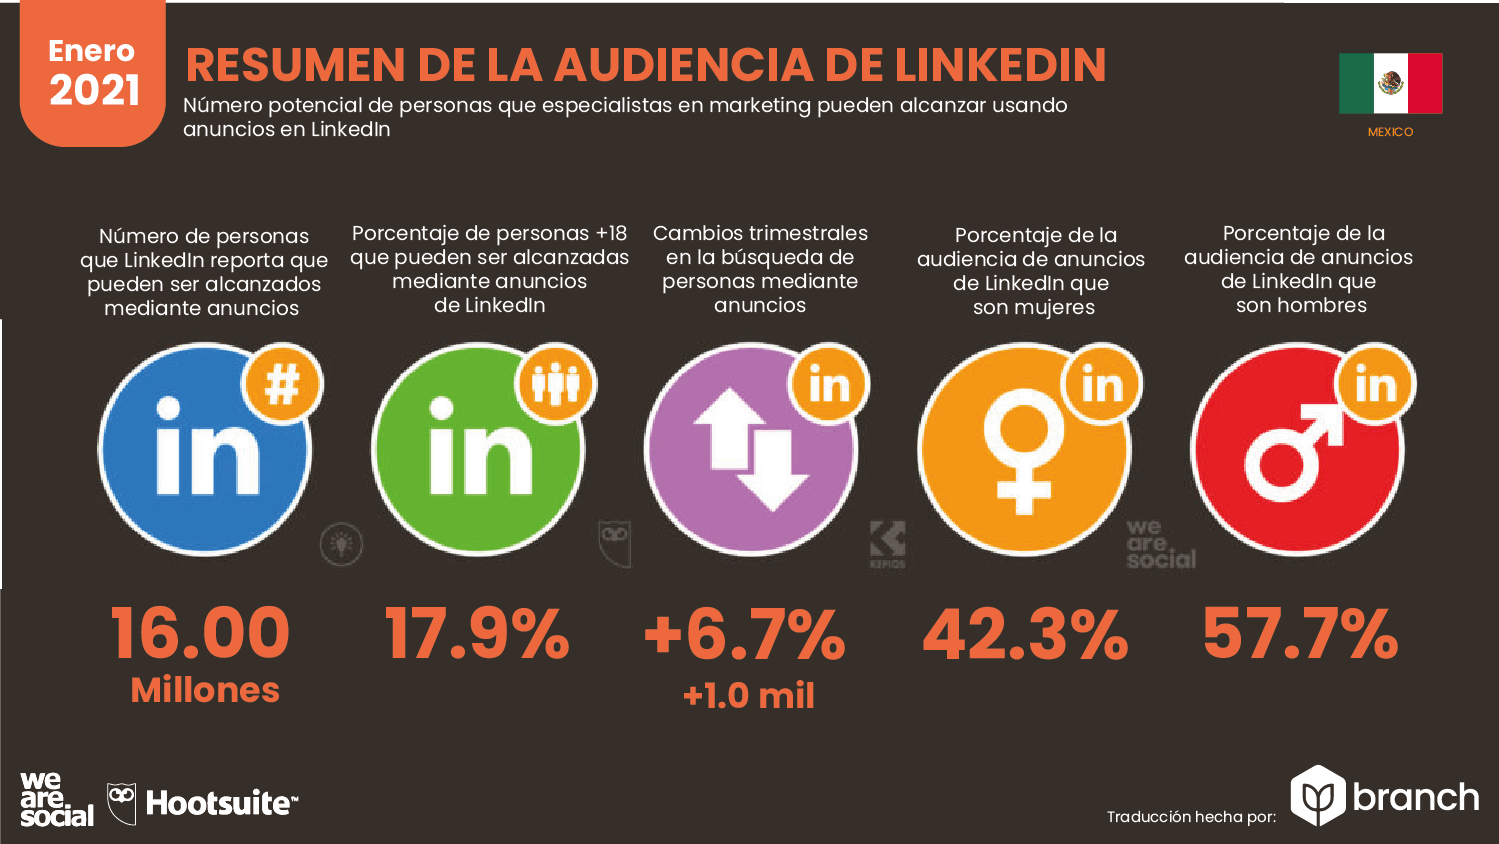 audiencia-de-LinkedIn-en-mexico-2020-2021